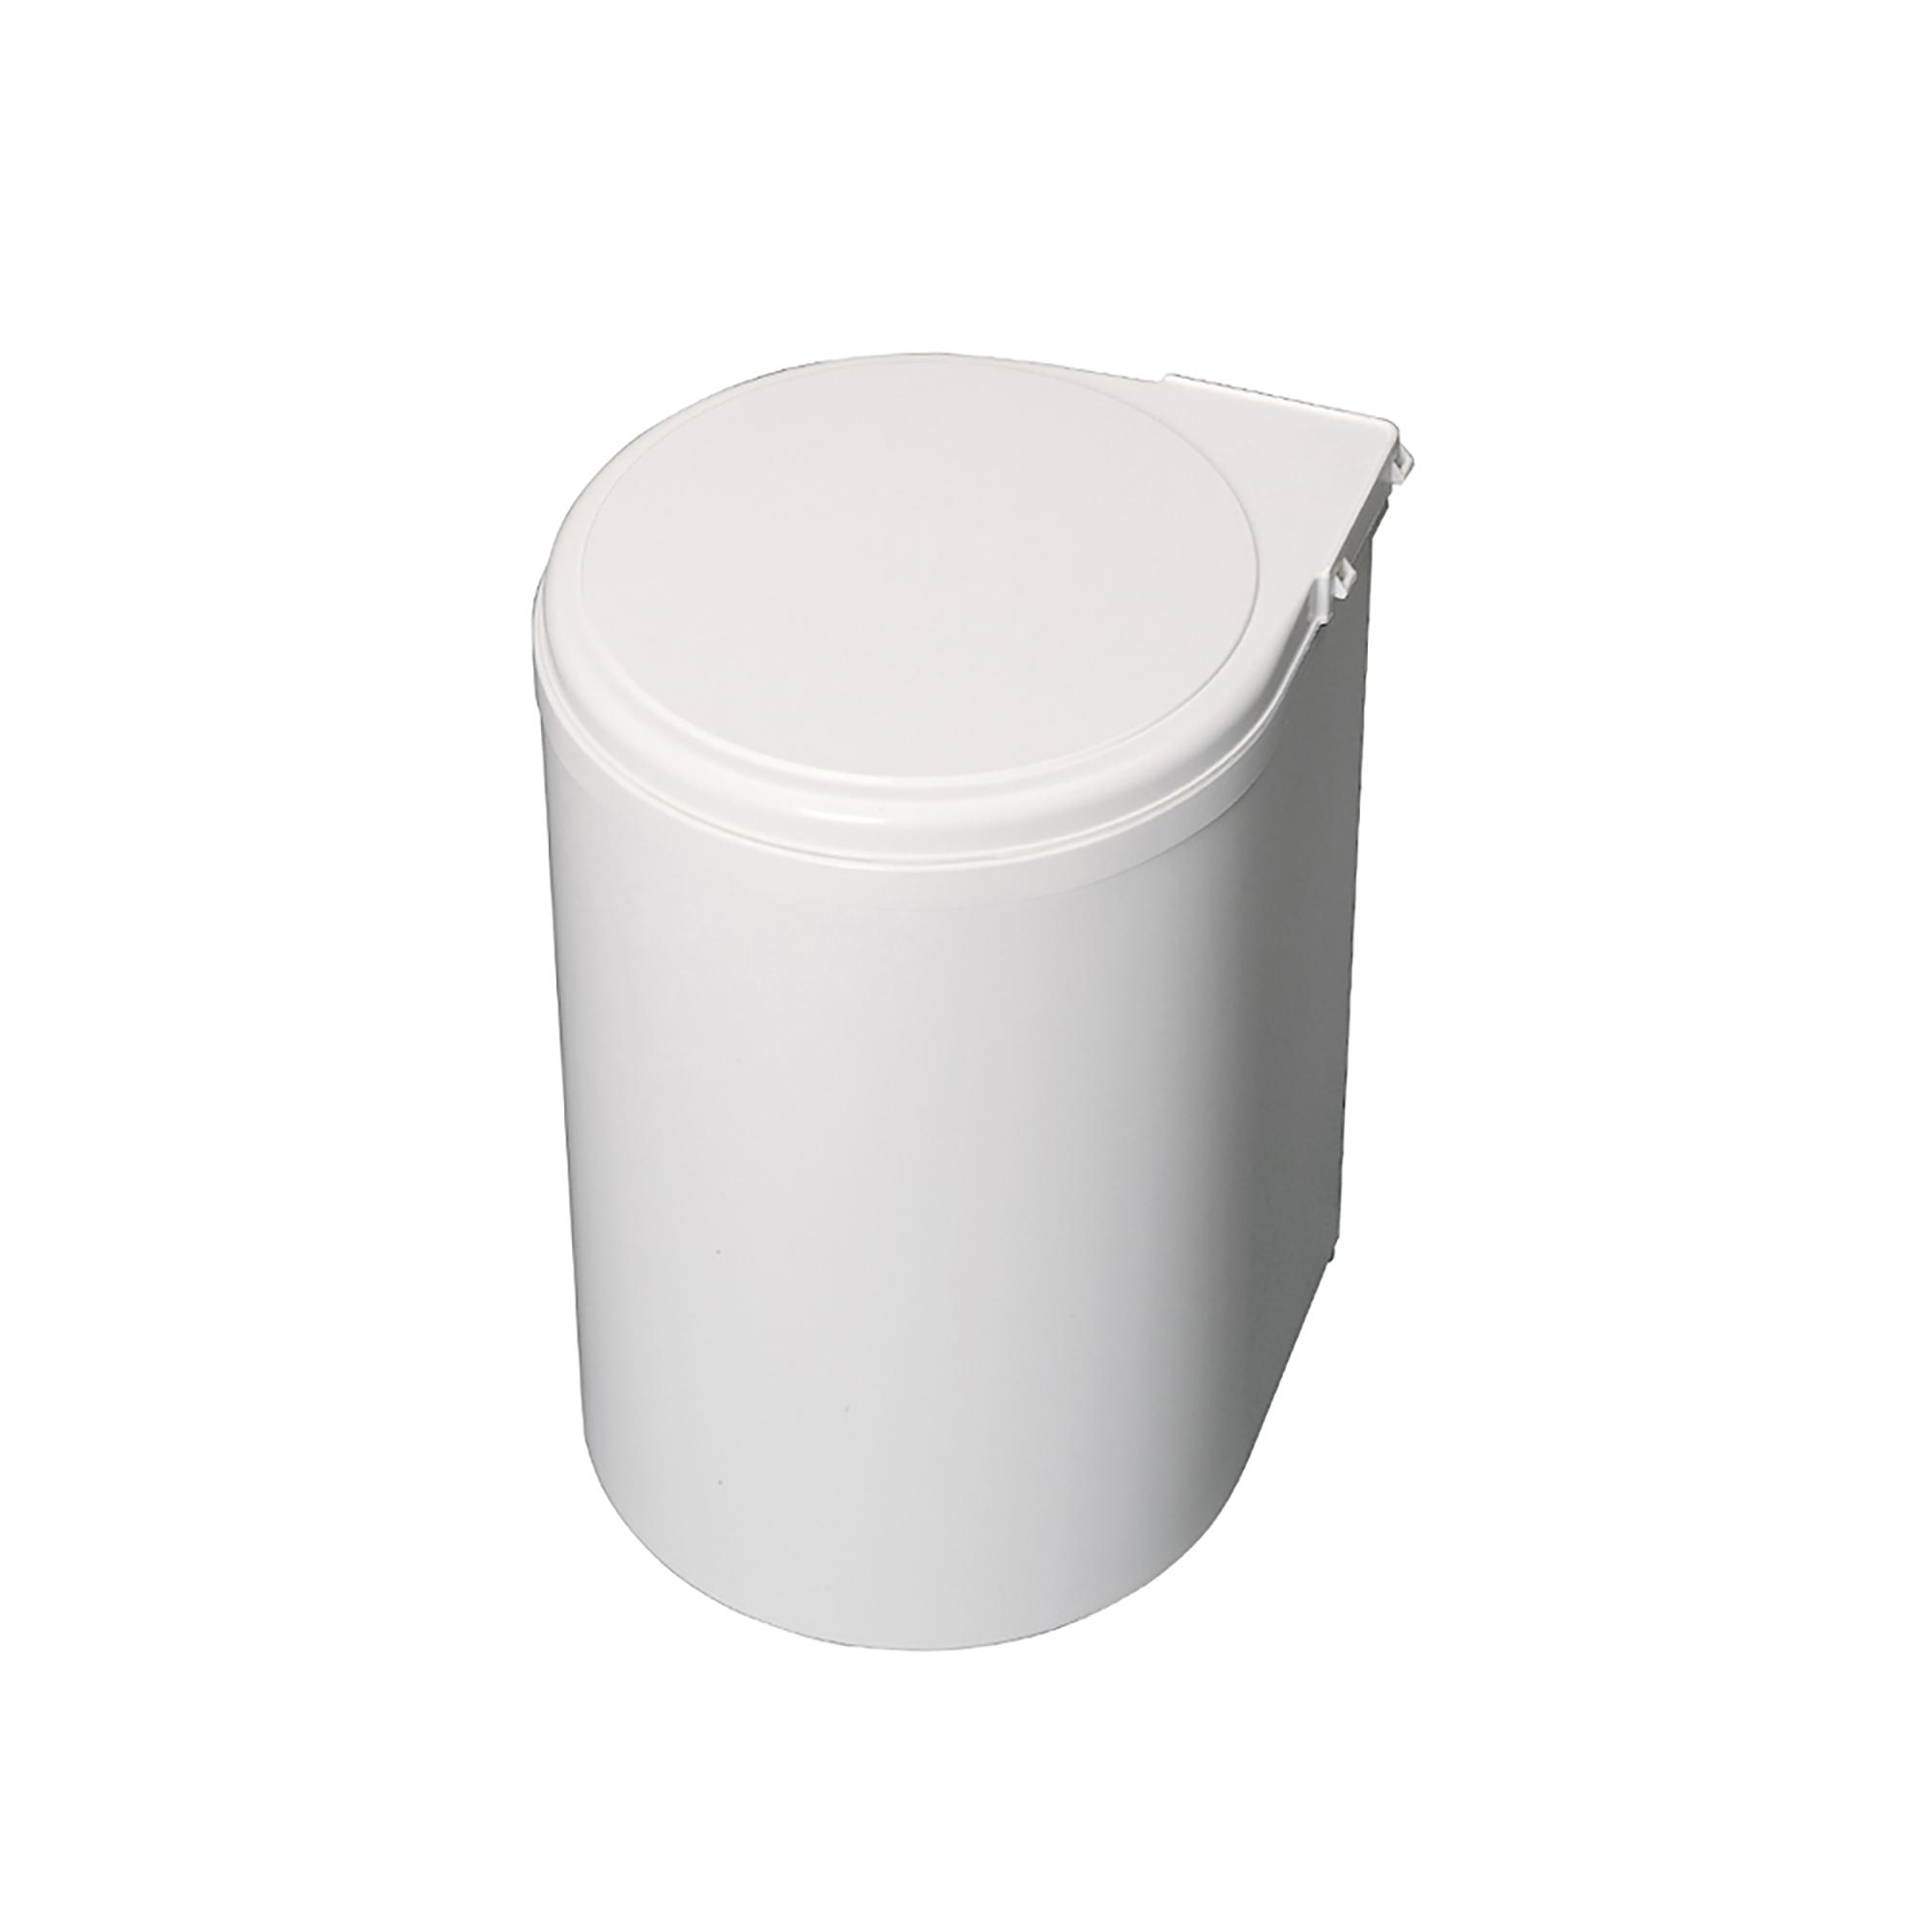 Kunststoff-Recycling-Abfallbehälter für die Küche zur Befestigung an Möbeltüren, 13 Liter, weiß